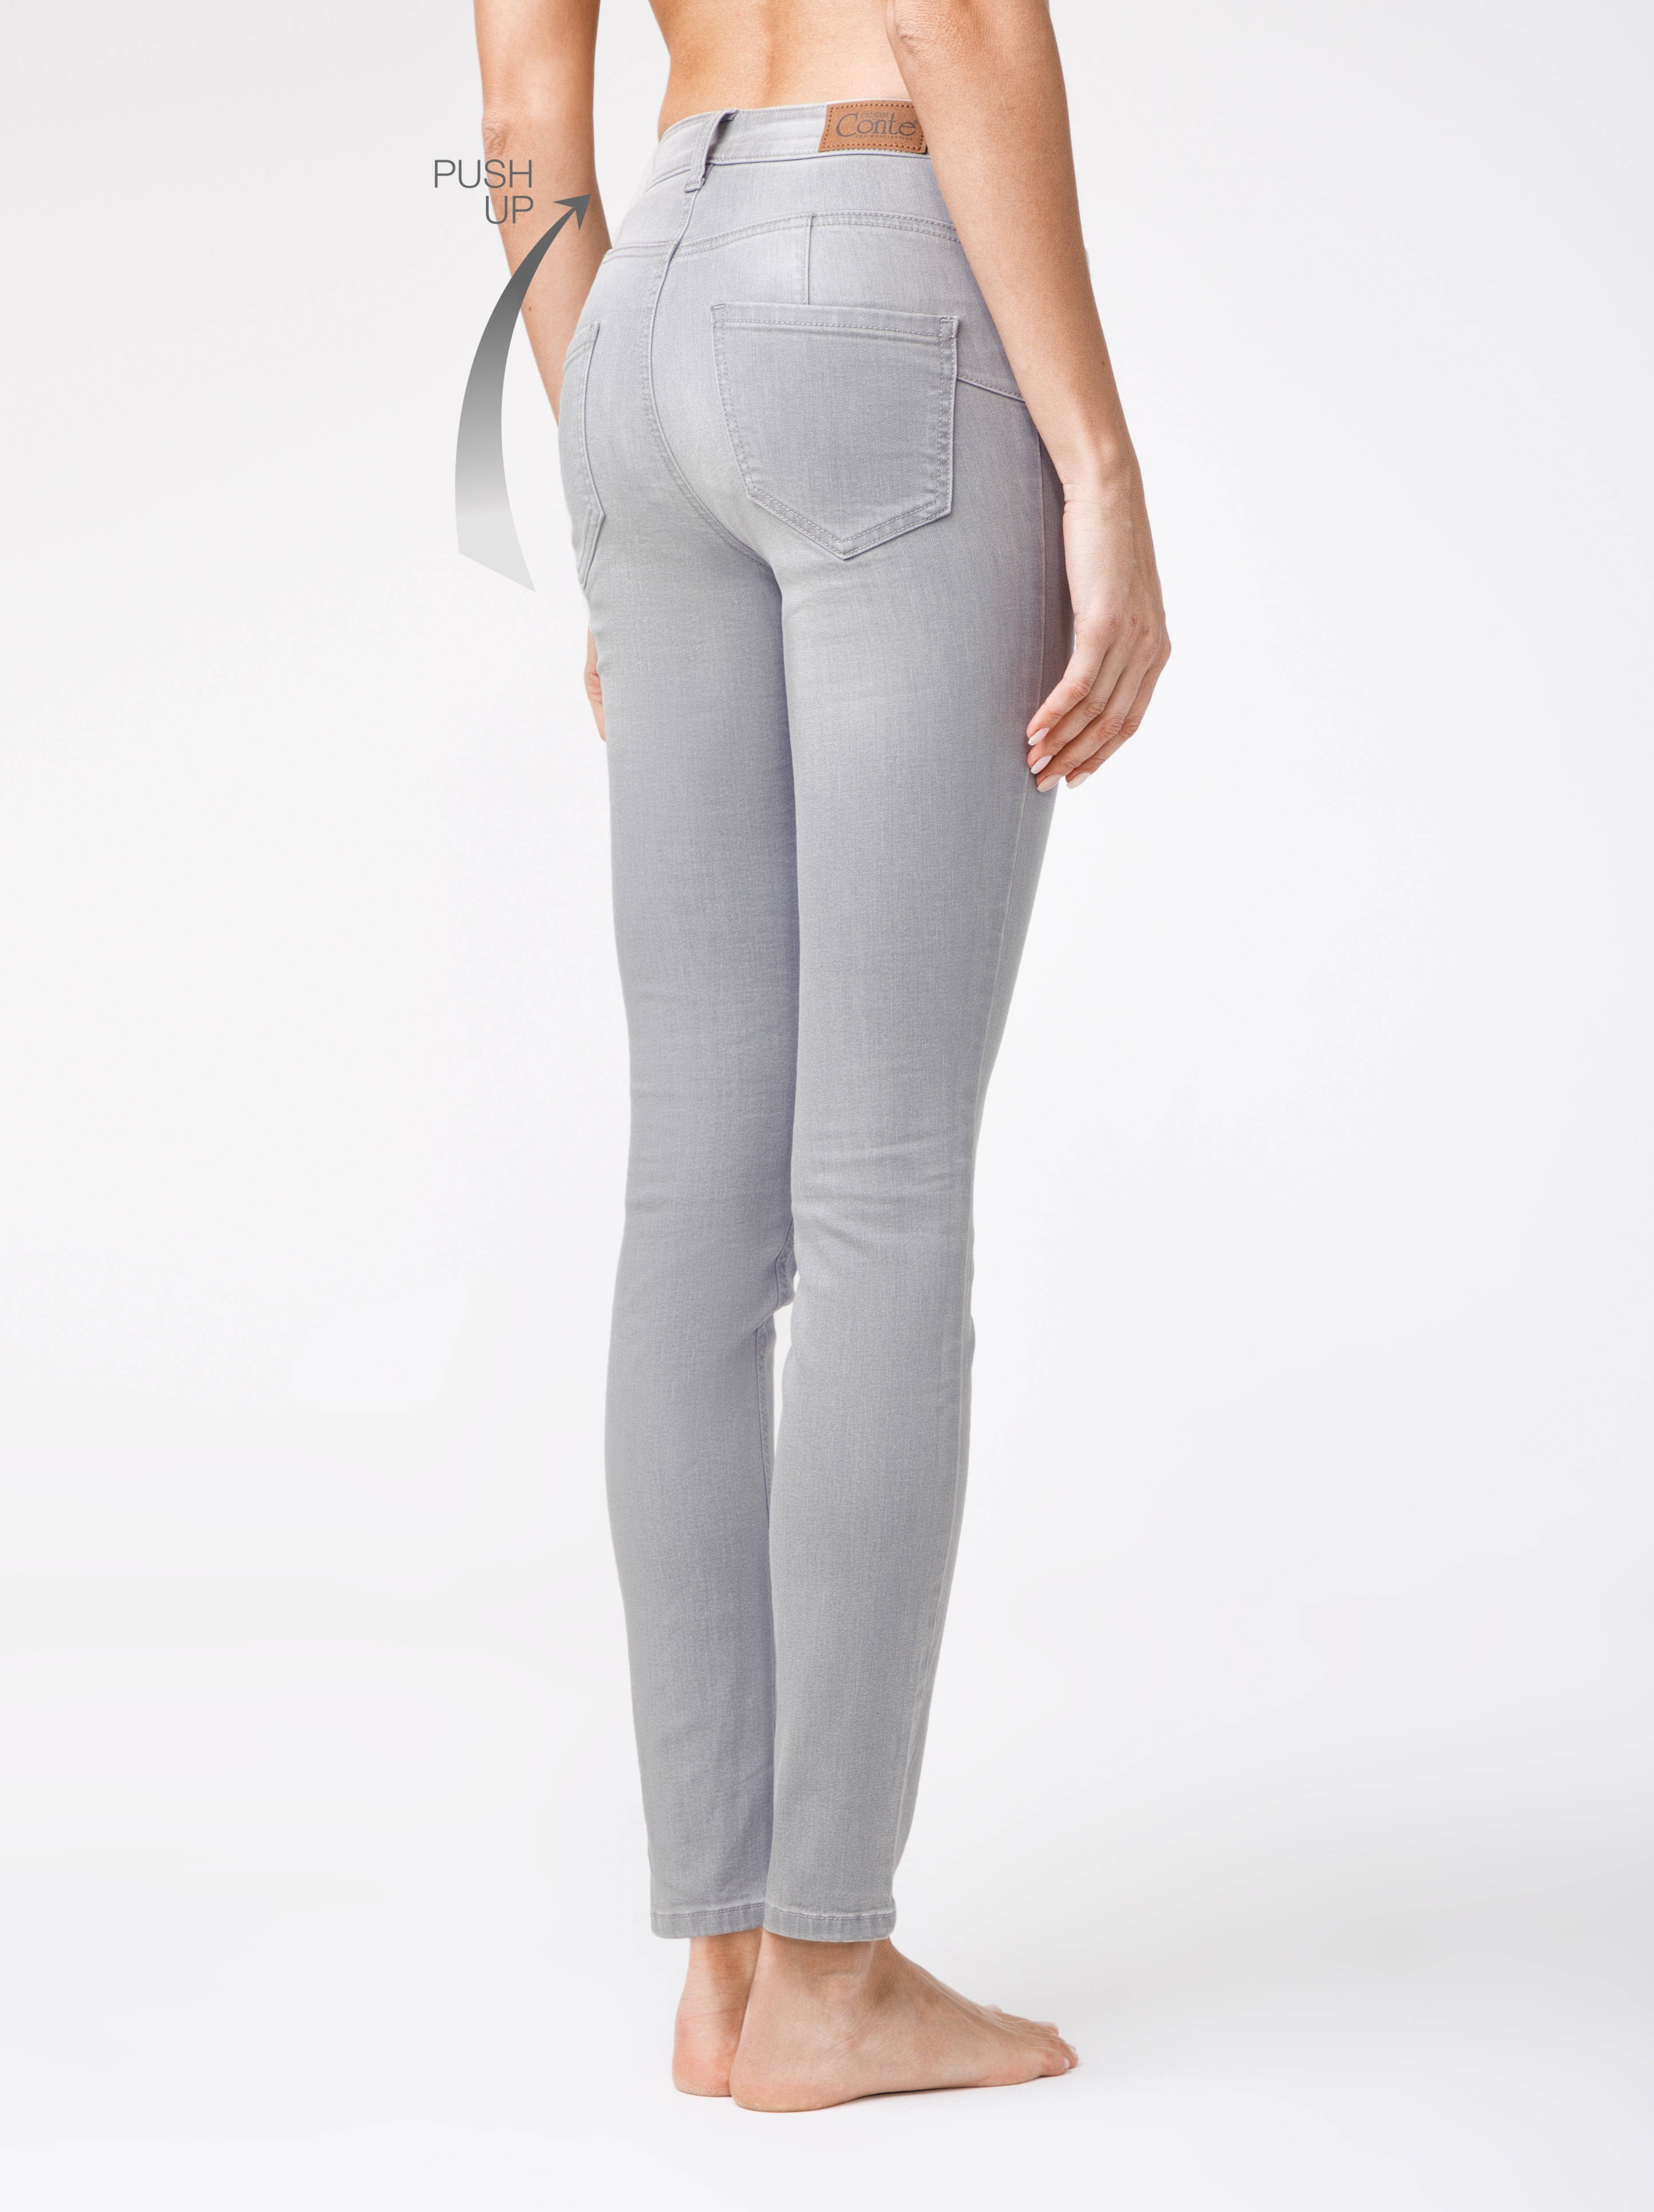 Моделирующие eco-friendly джинсы skinny push-up с высокой посадкой CON-127 Conte ⭐️, цвет light grey, размер 164-102 - фото 1